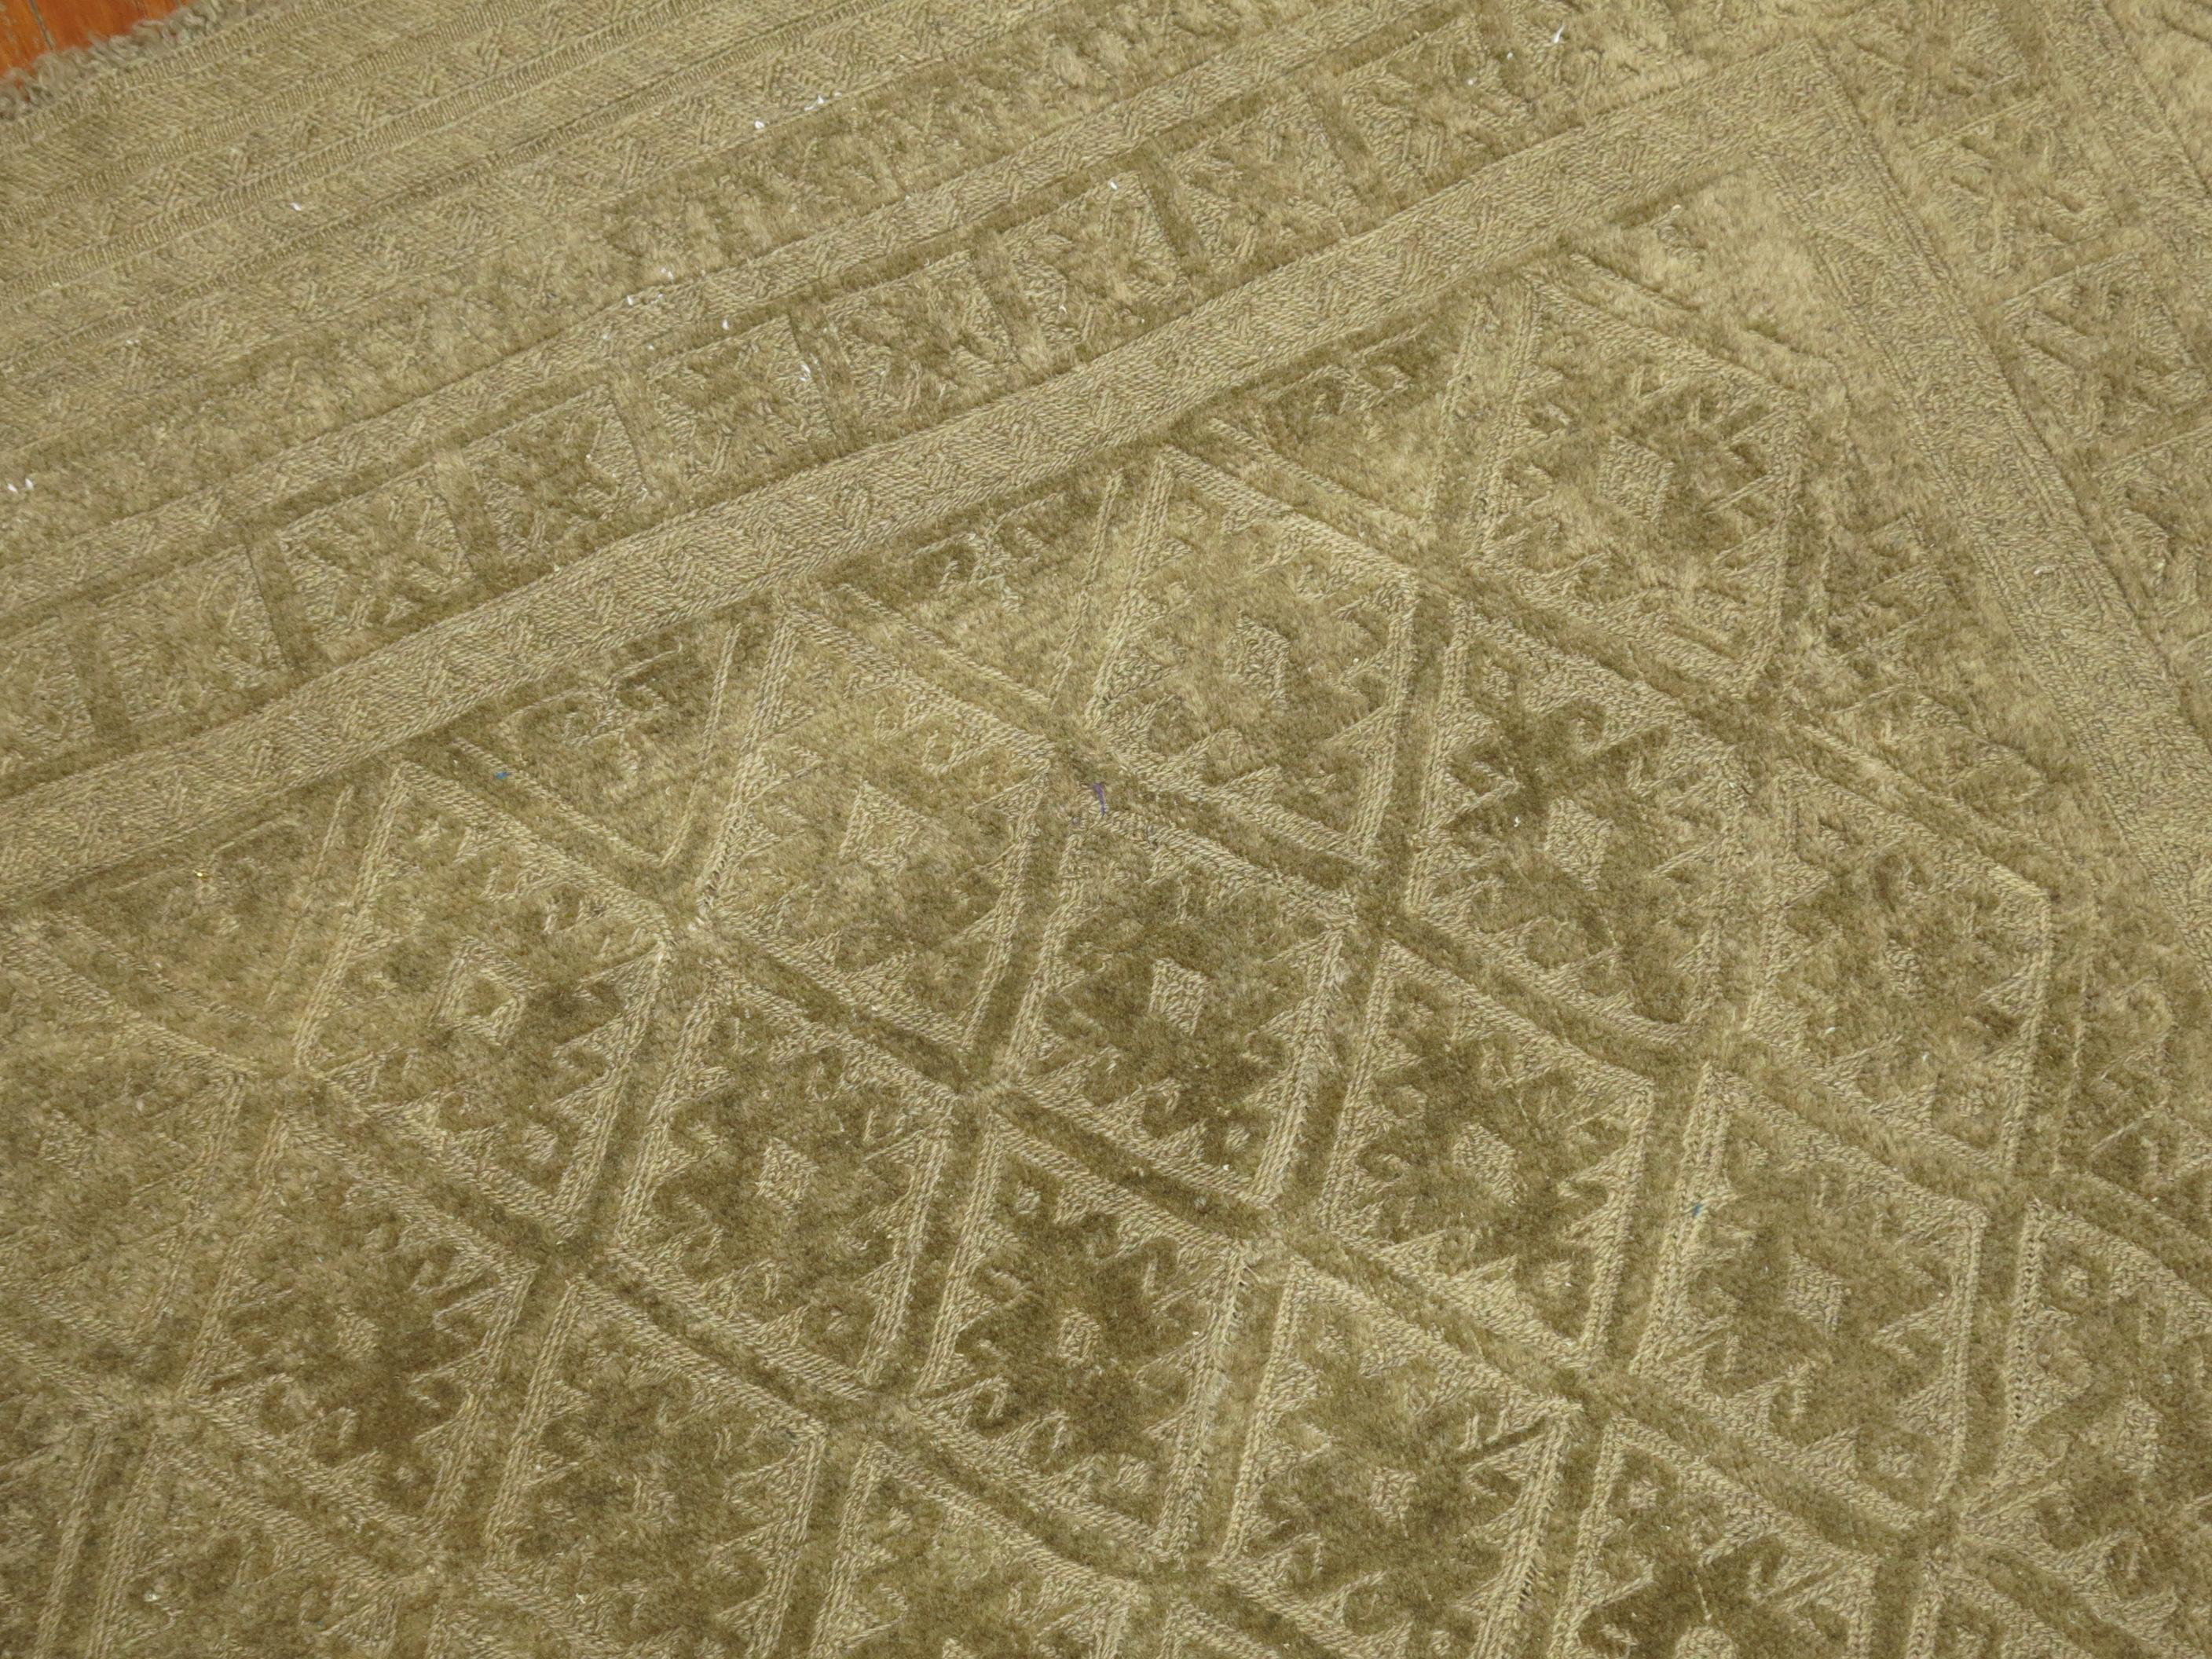 Tapis Souf du milieu du 20e siècle, tissé quelque part en Iran central. 

5' x 5'11''


Les tapis Souf sont très rares car ils présentent une technique de poils hauts et bas surélevés. Ils sont populaires en Iran et peu compris ailleurs, sauf par